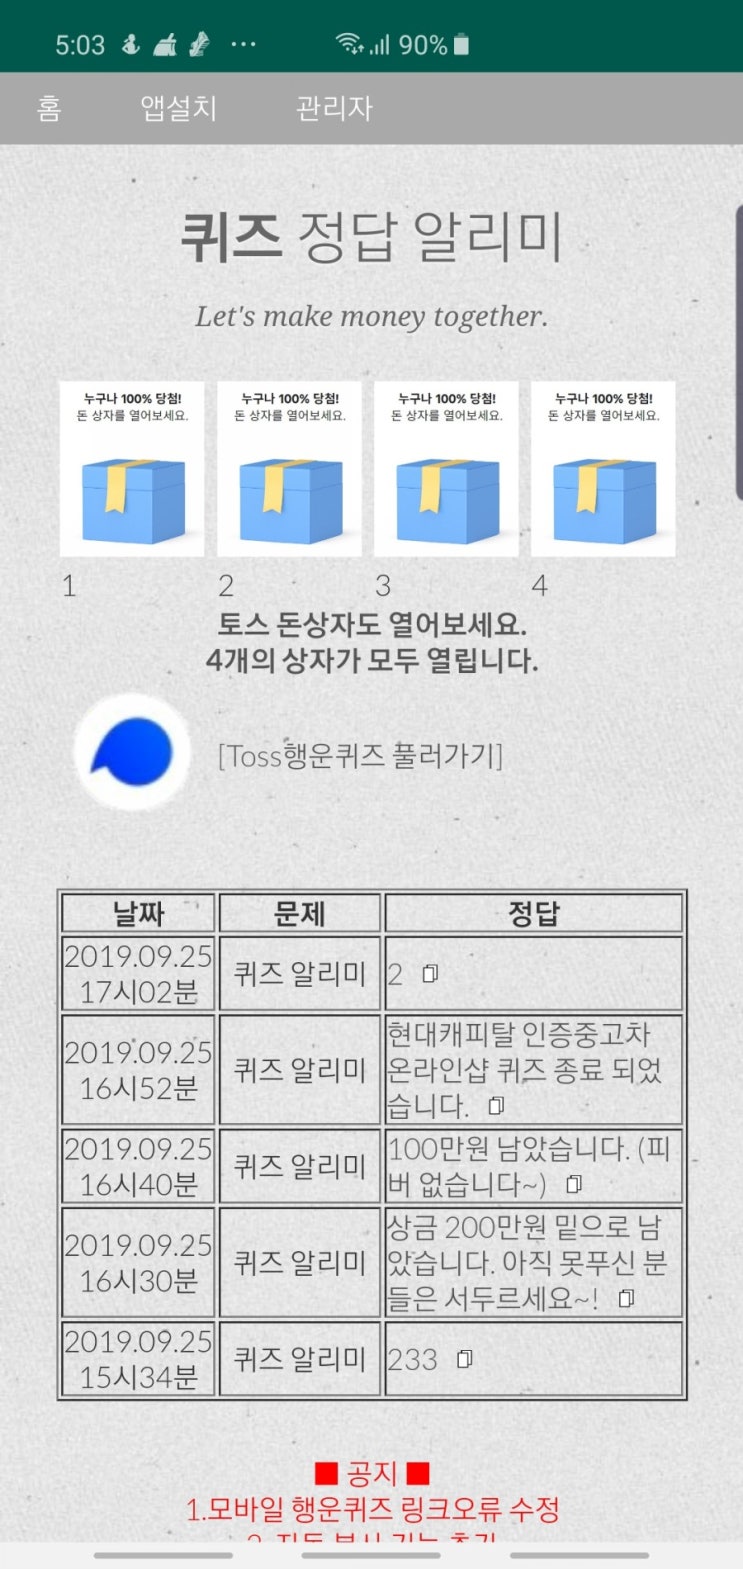 퍼펙트맨 토스행운퀴즈 정답 공개(실시간)